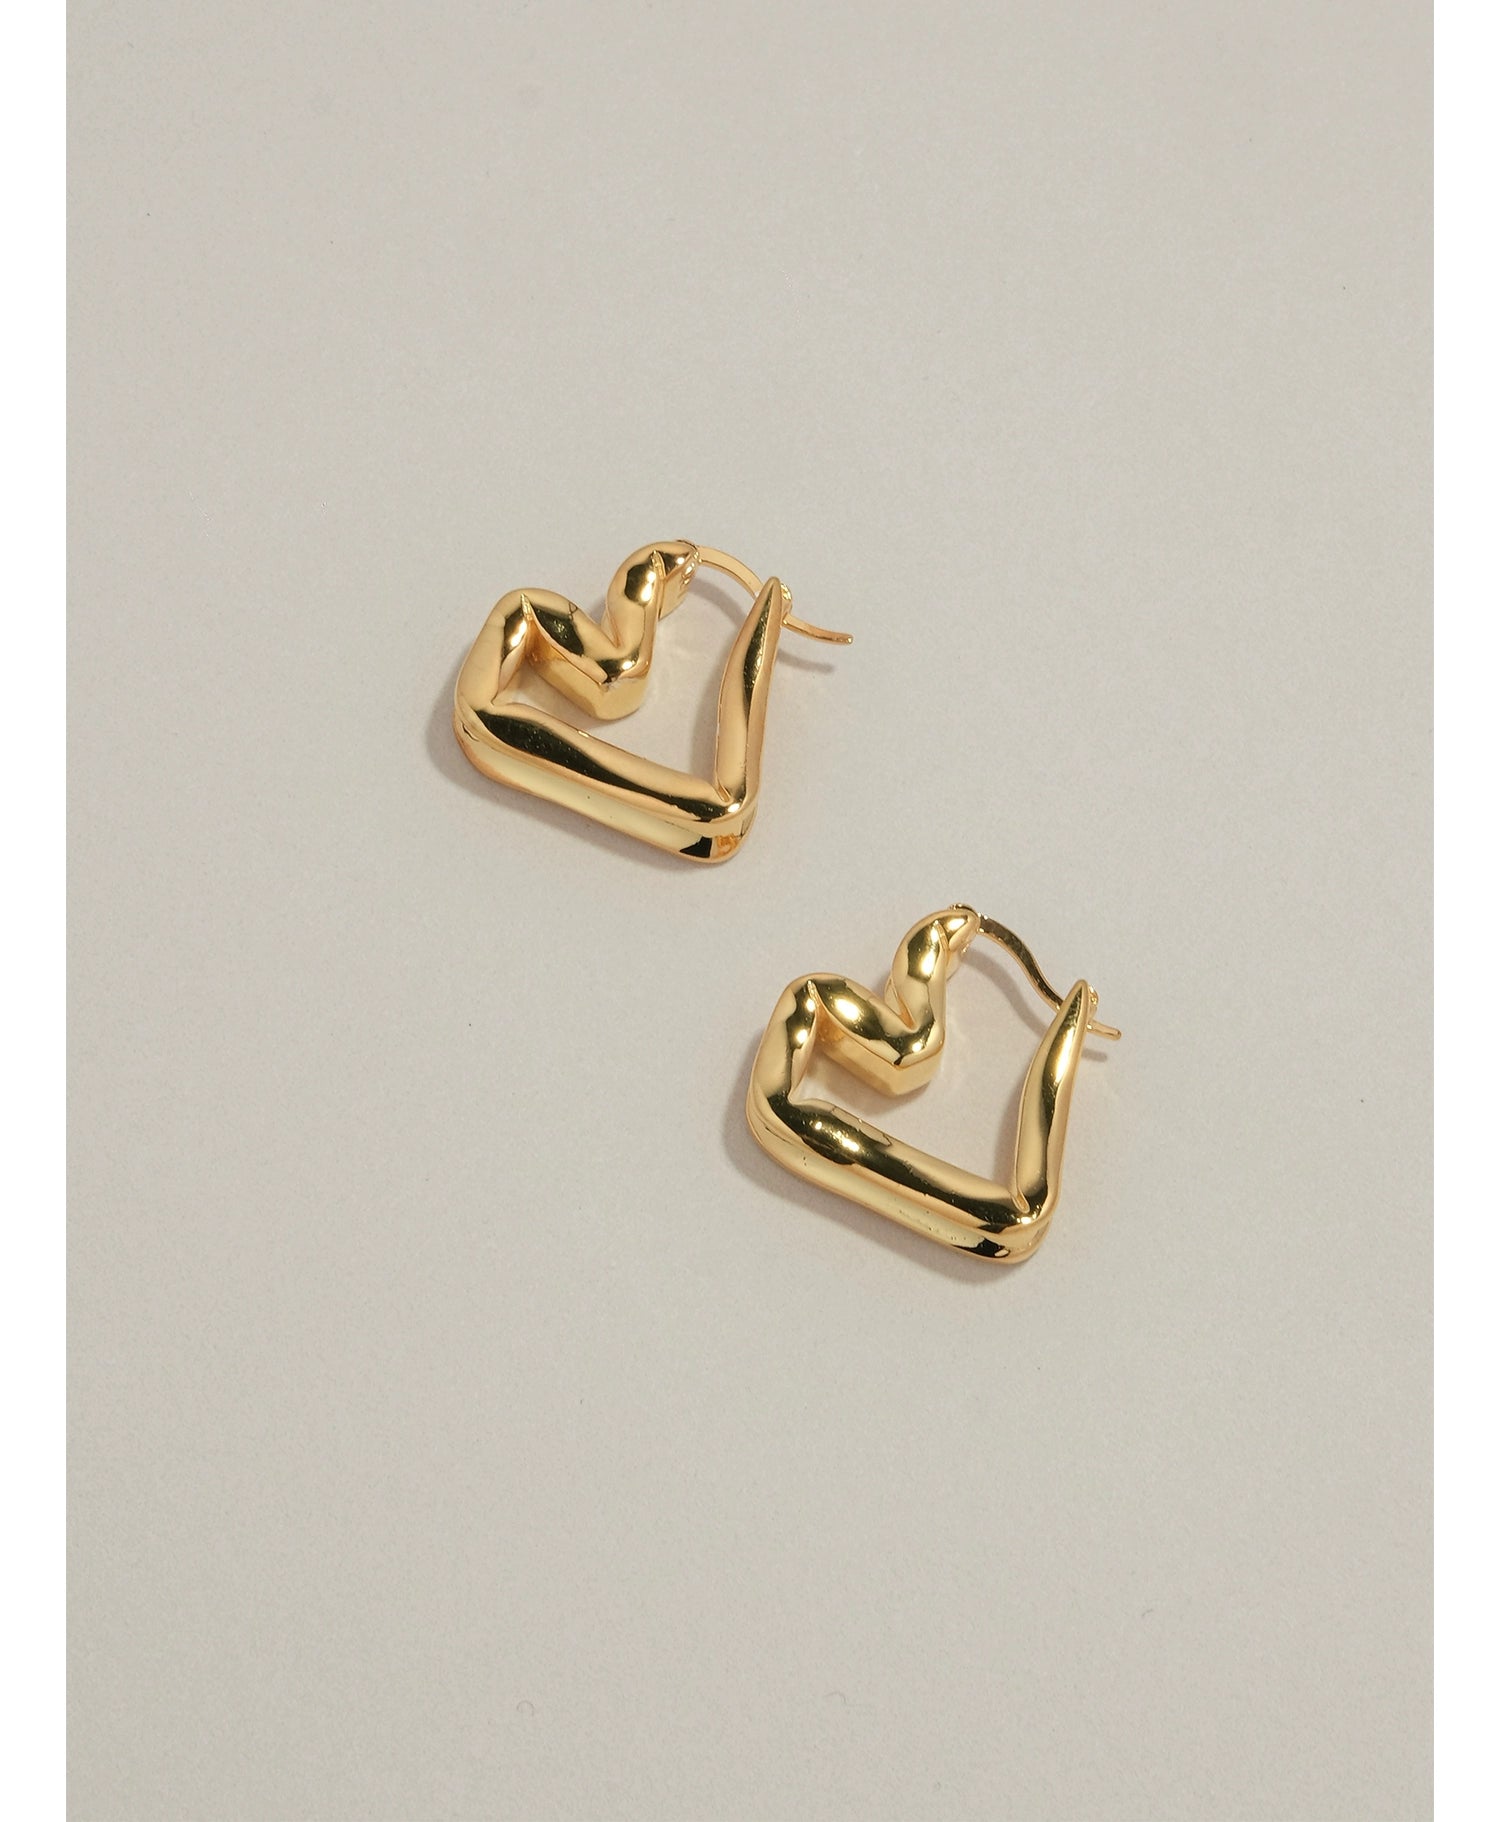 Ricoh Heart Hoop Earrings Gold / Silver